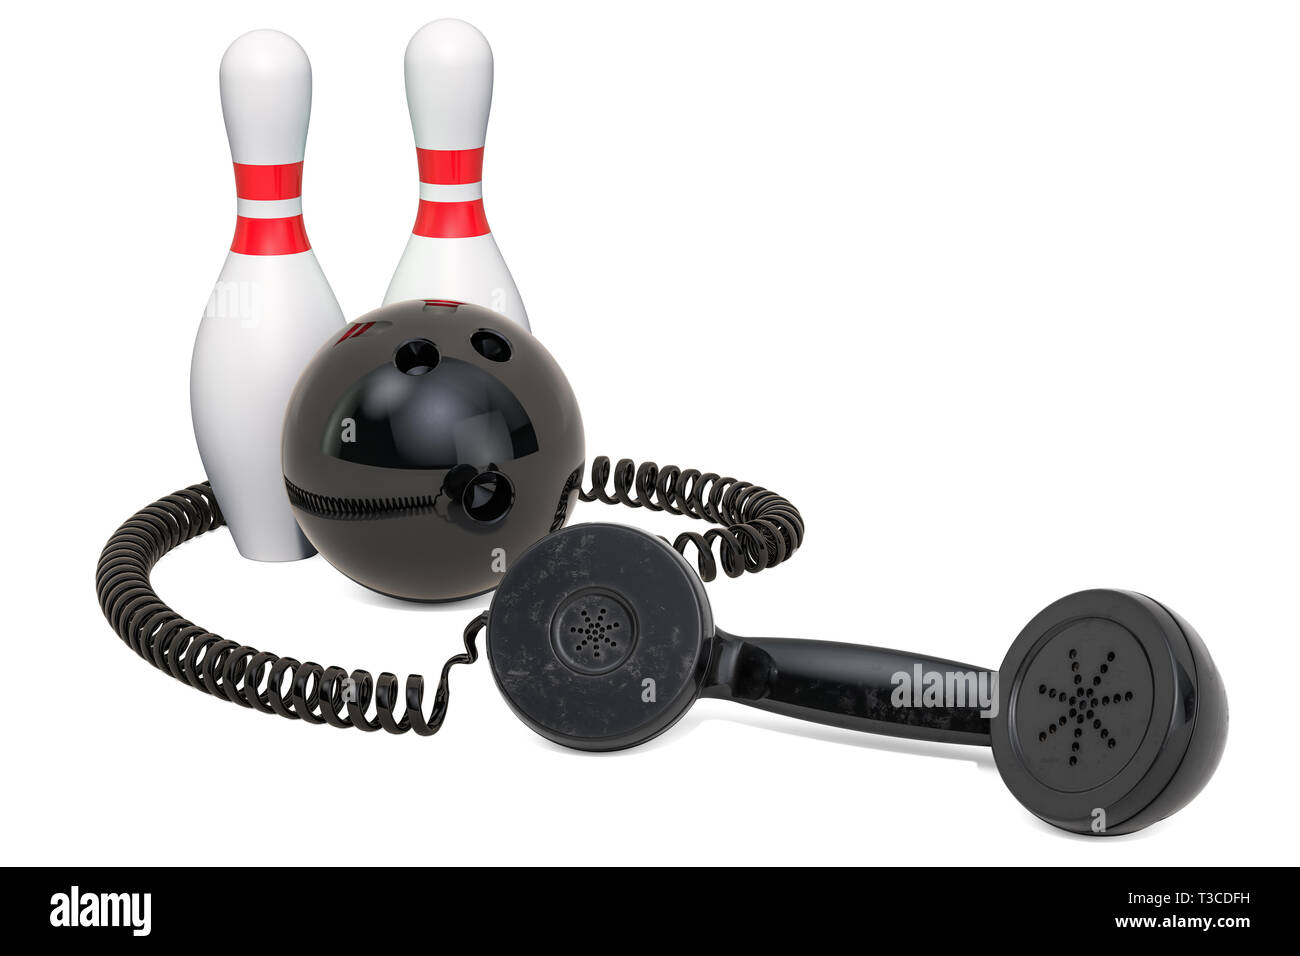 Ricevitore telefonico con palla da bowling e birilli, rendering 3D isolati su sfondo bianco Foto Stock